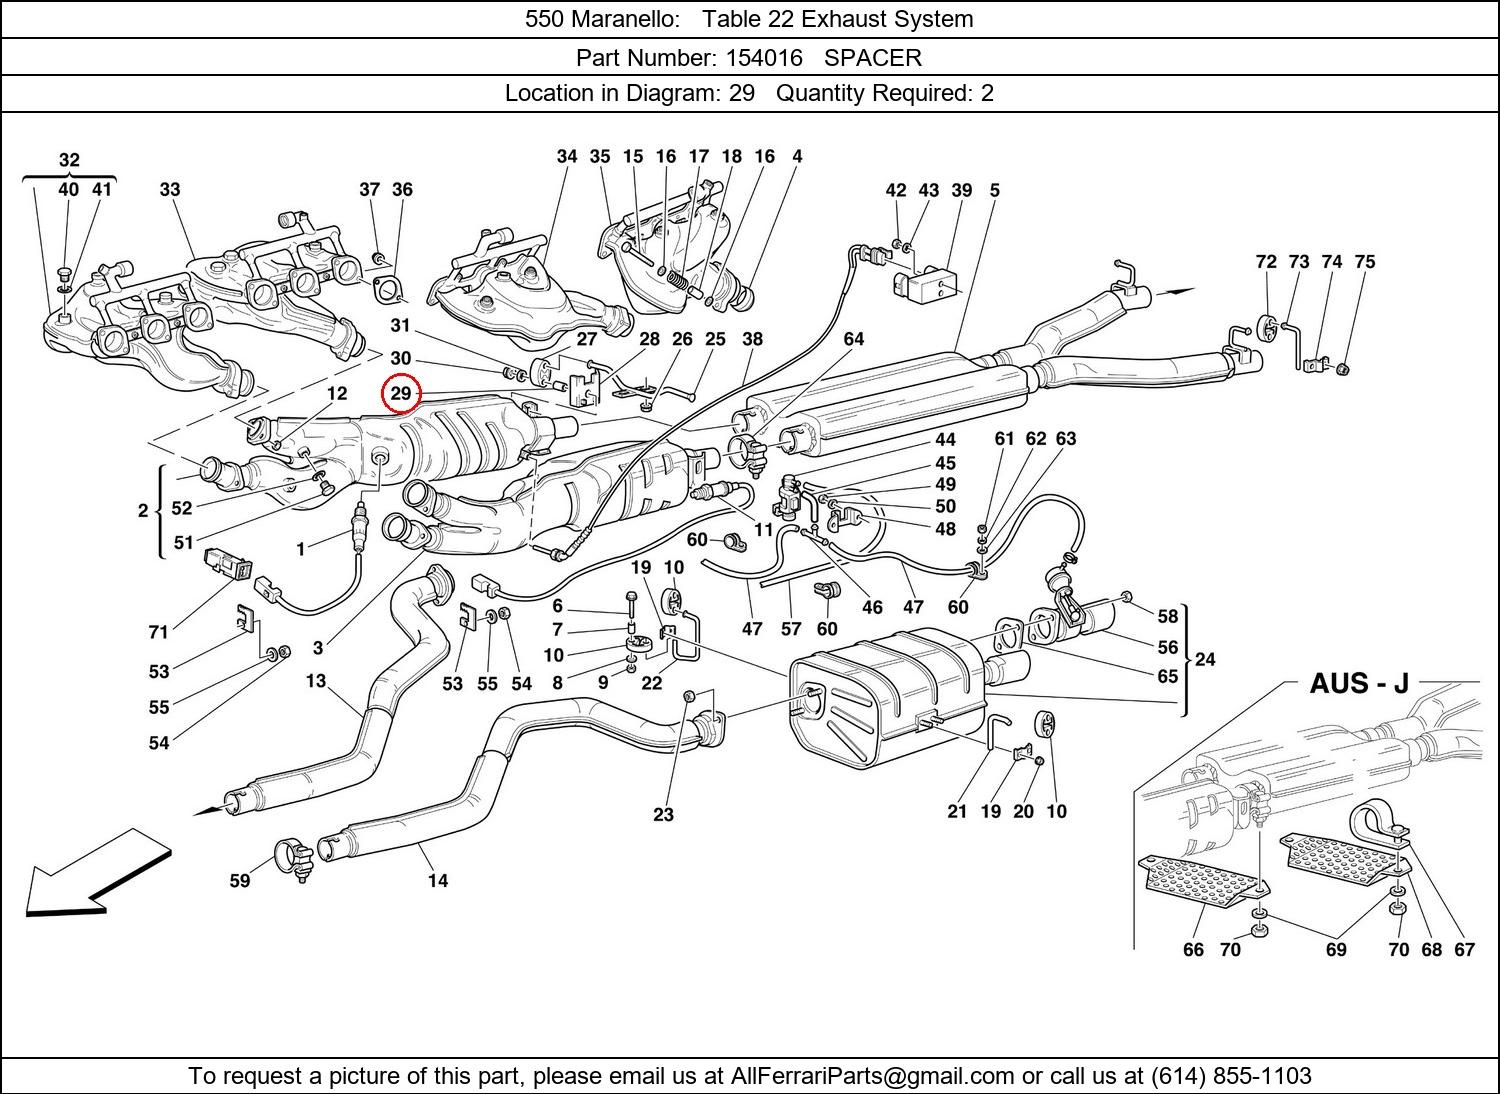 Ferrari Part 154016